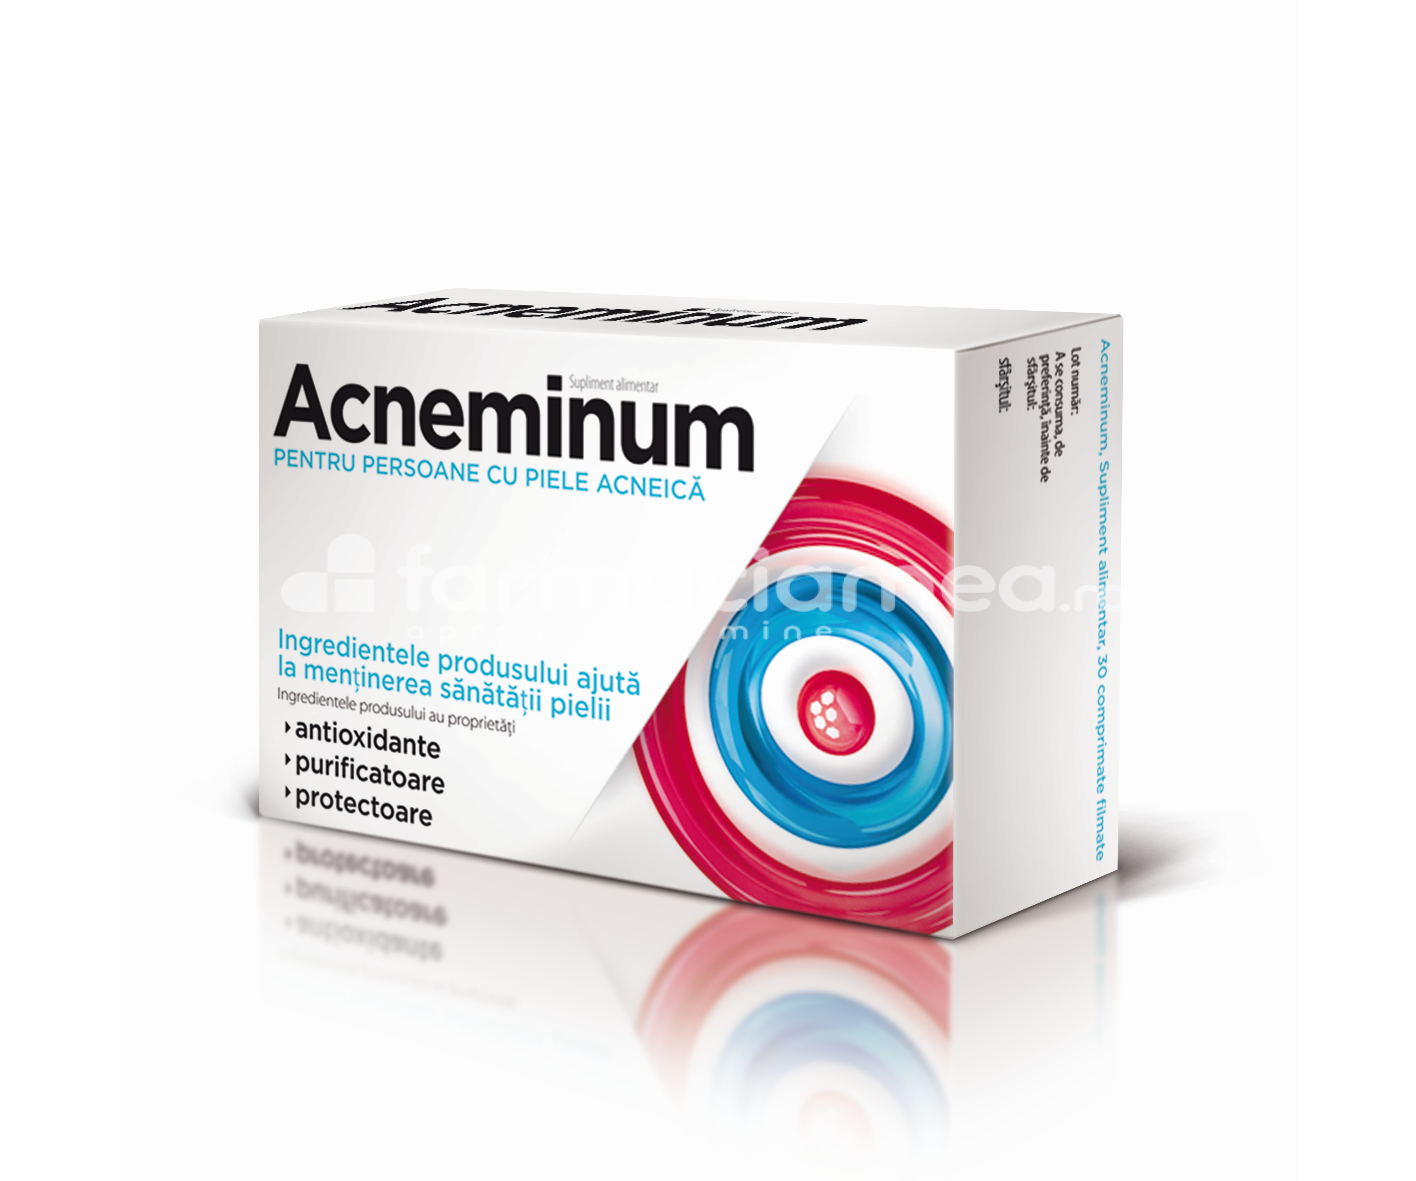 Acnee - Aflofarm Acneminum pentru pielea cu tendinta acneica, 30 comprimate, farmaciamea.ro